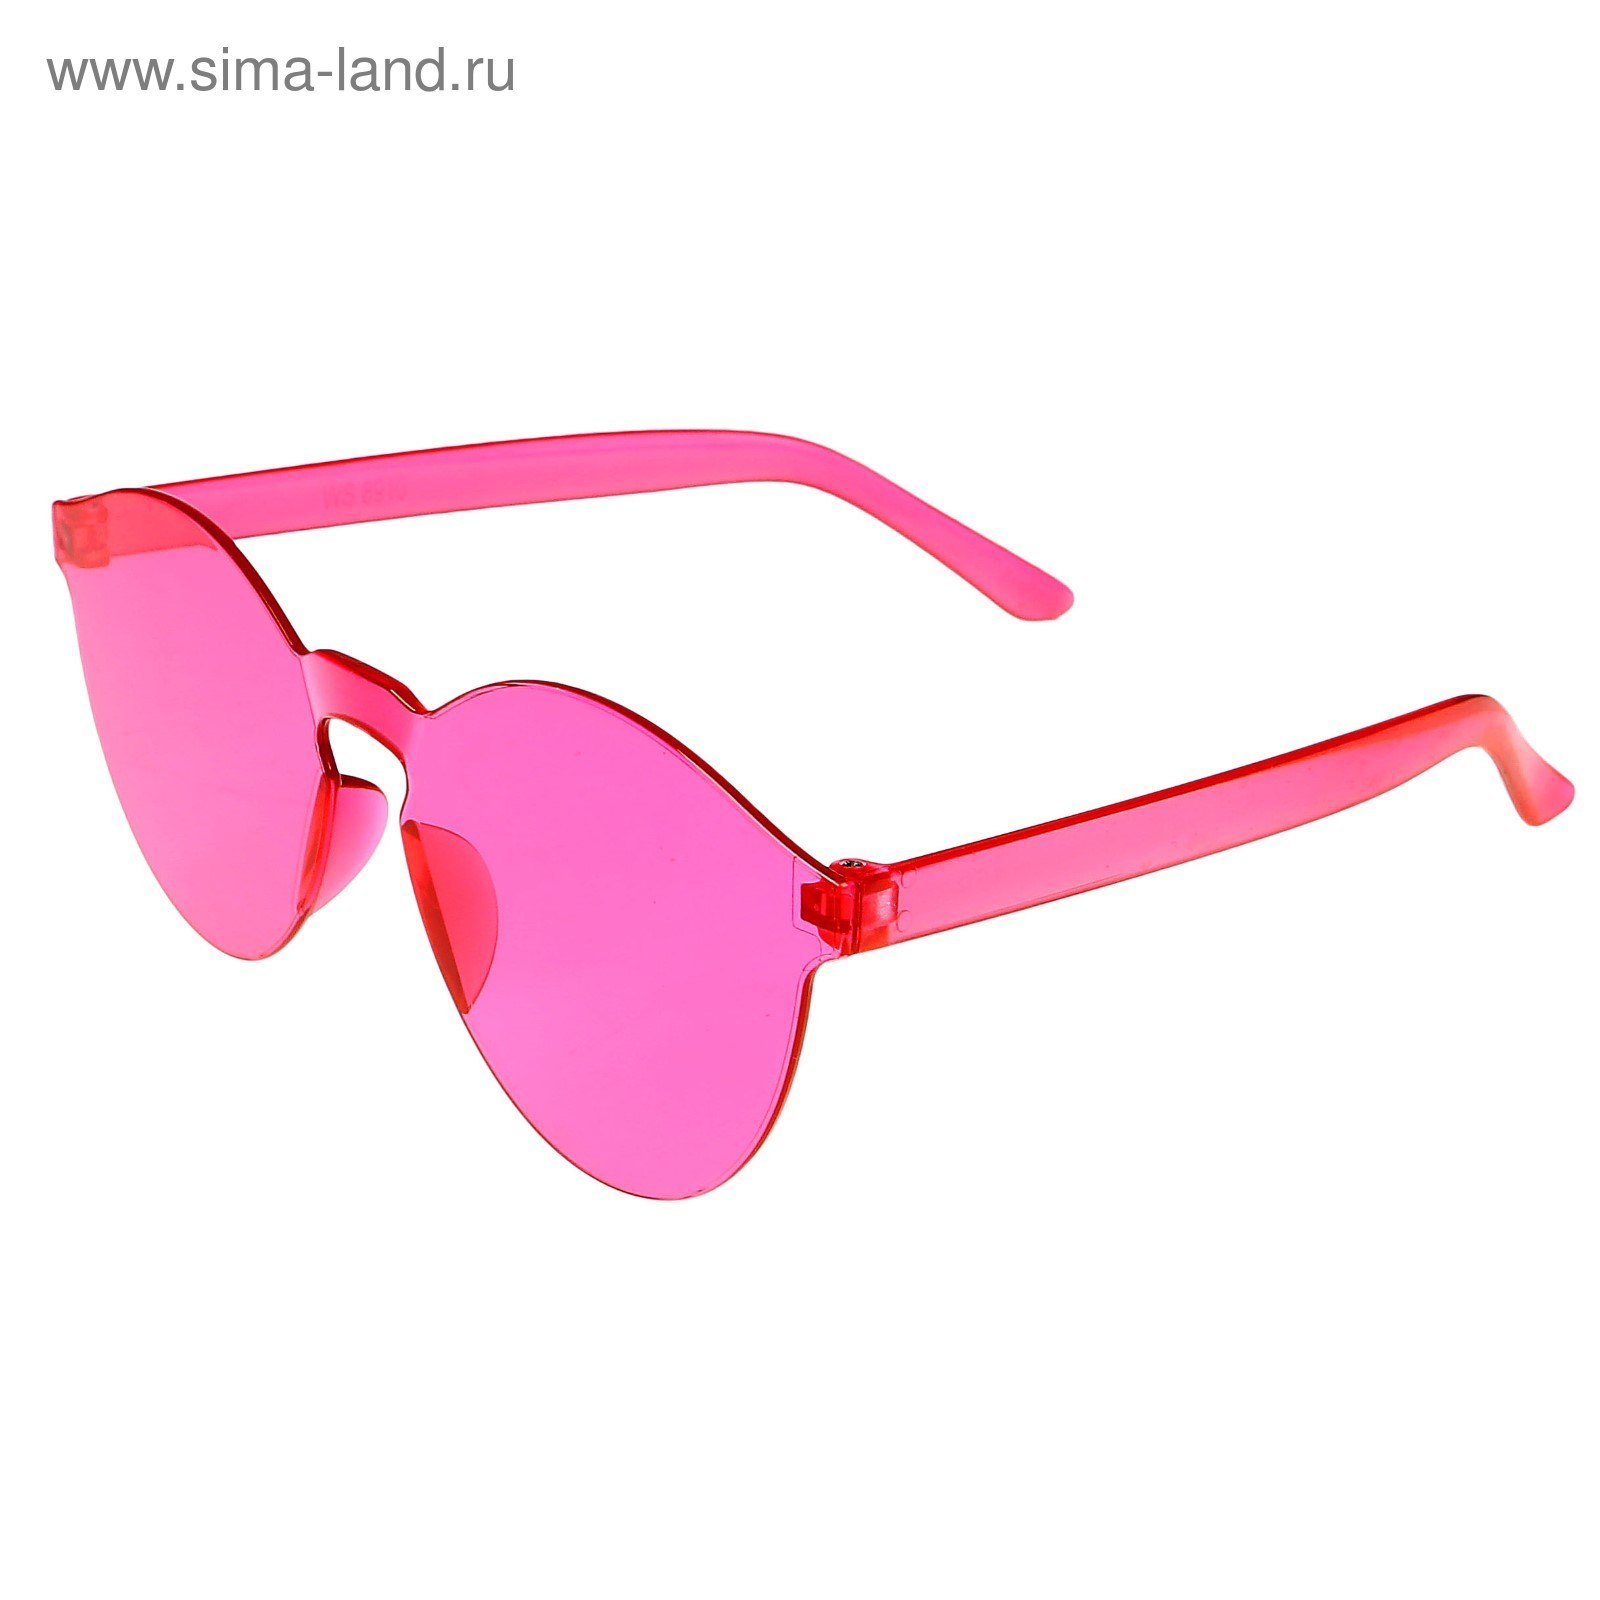 Без розовых очков. Розовые солнцезащитные очки. Розовое очко. Детские солнцезащитные очки. Детские розовые очки.